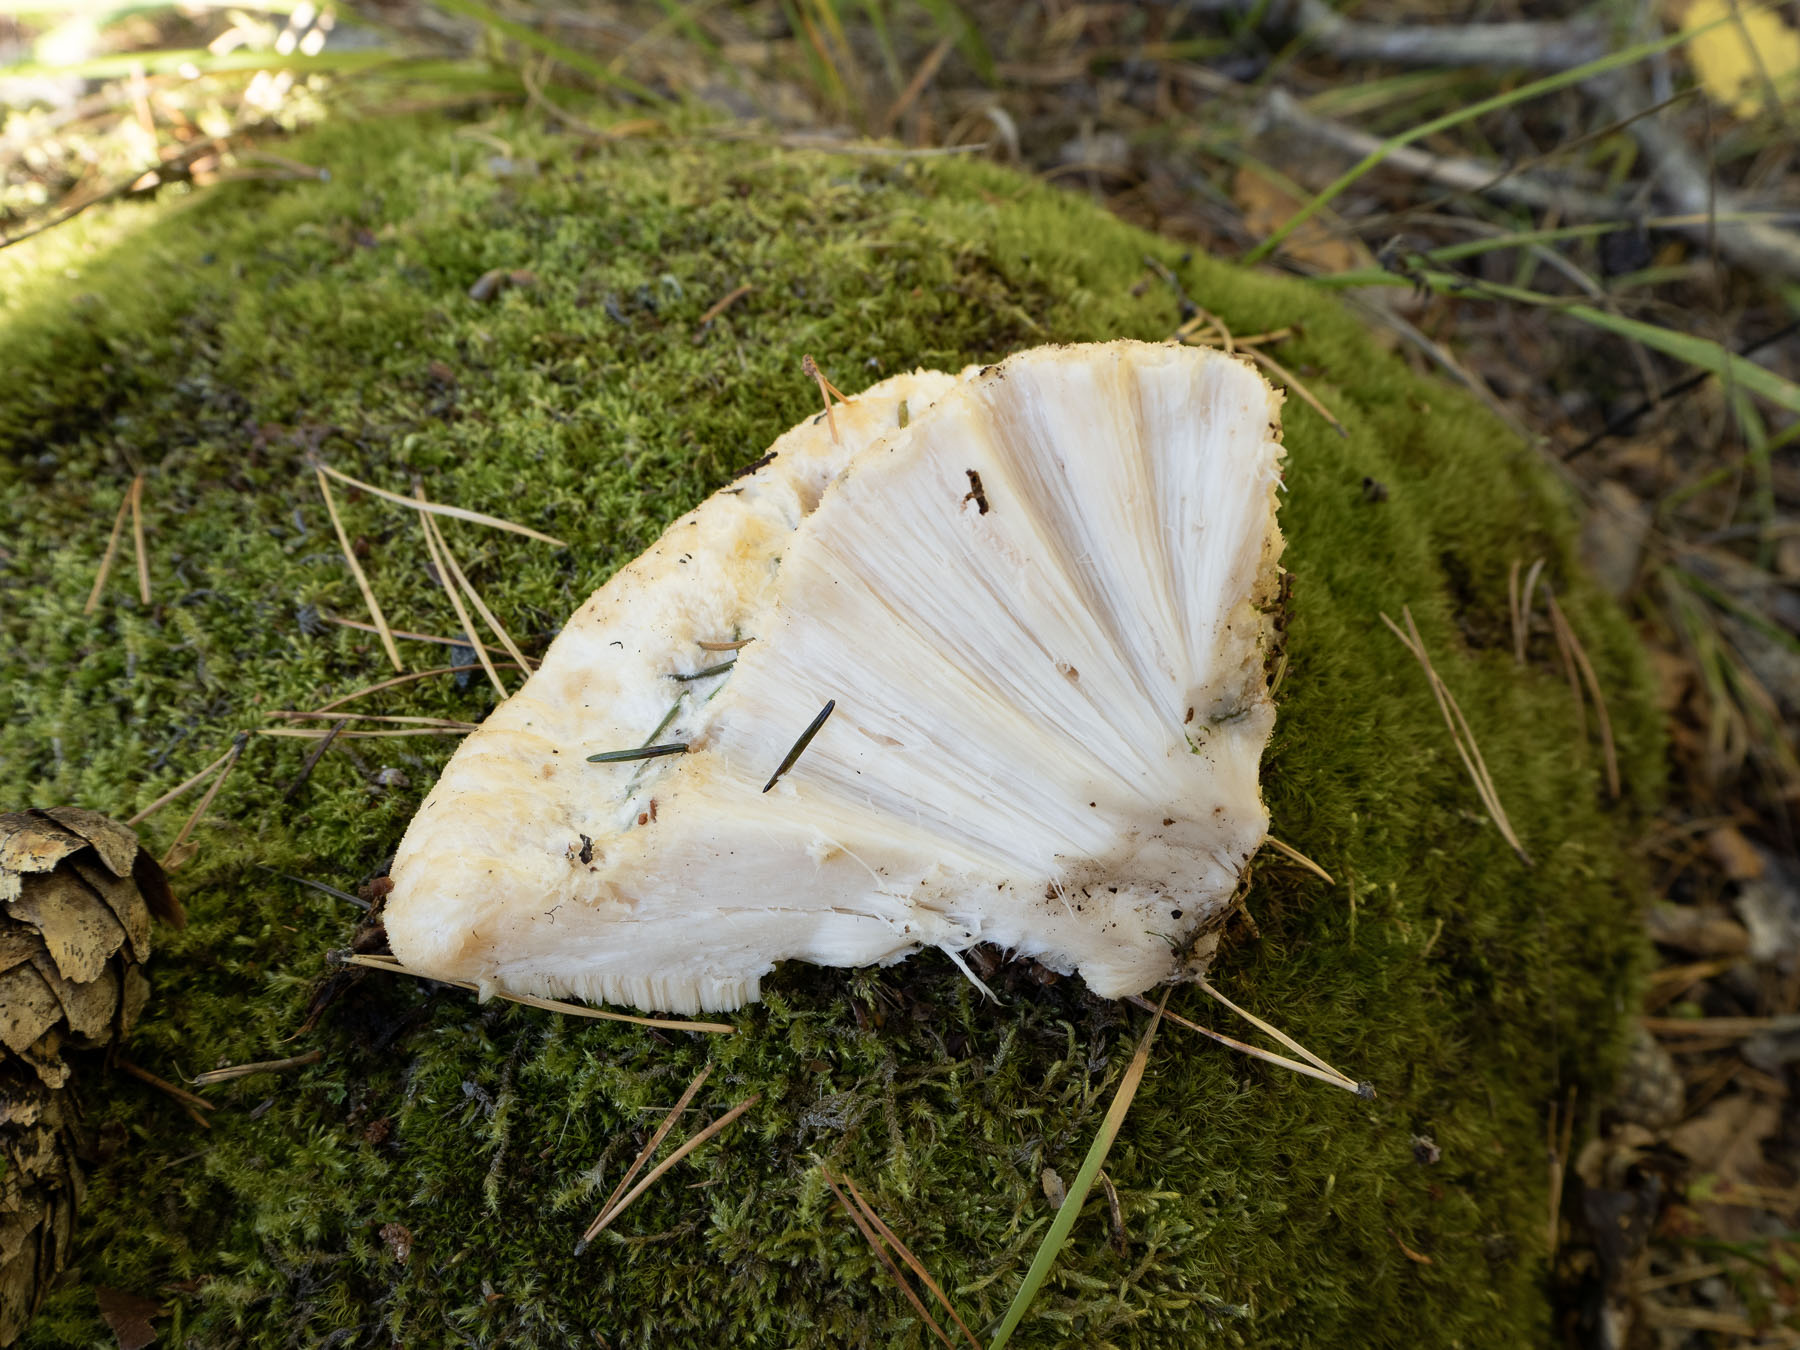 Климакоцистис северный (Climacocystis borealis)Природный парк Görvälns, октябрь 2021. На живой ели. Автор фото: Сутормина Марина